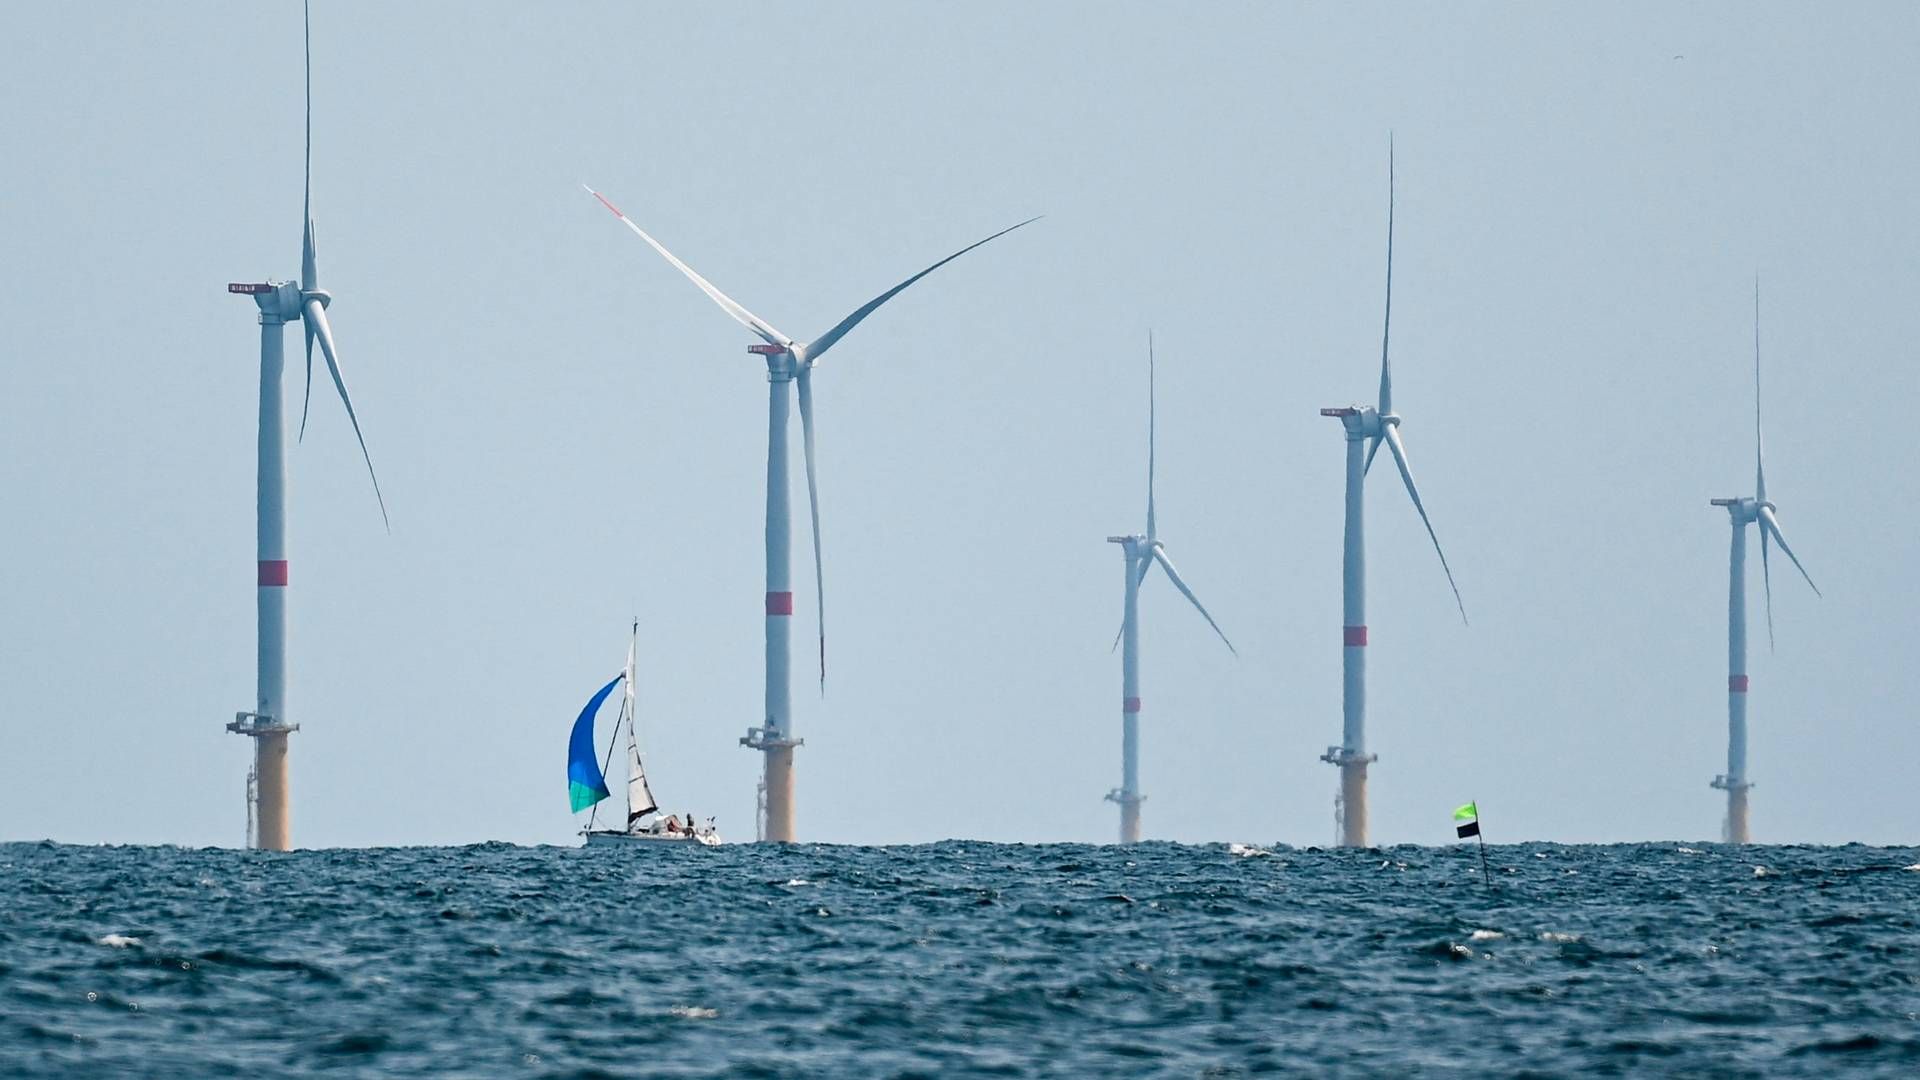 Total Energies vil gerne byde ind med vedvarende energi i kommende havvindudbud. | Foto: Sebastien Salom-gomis